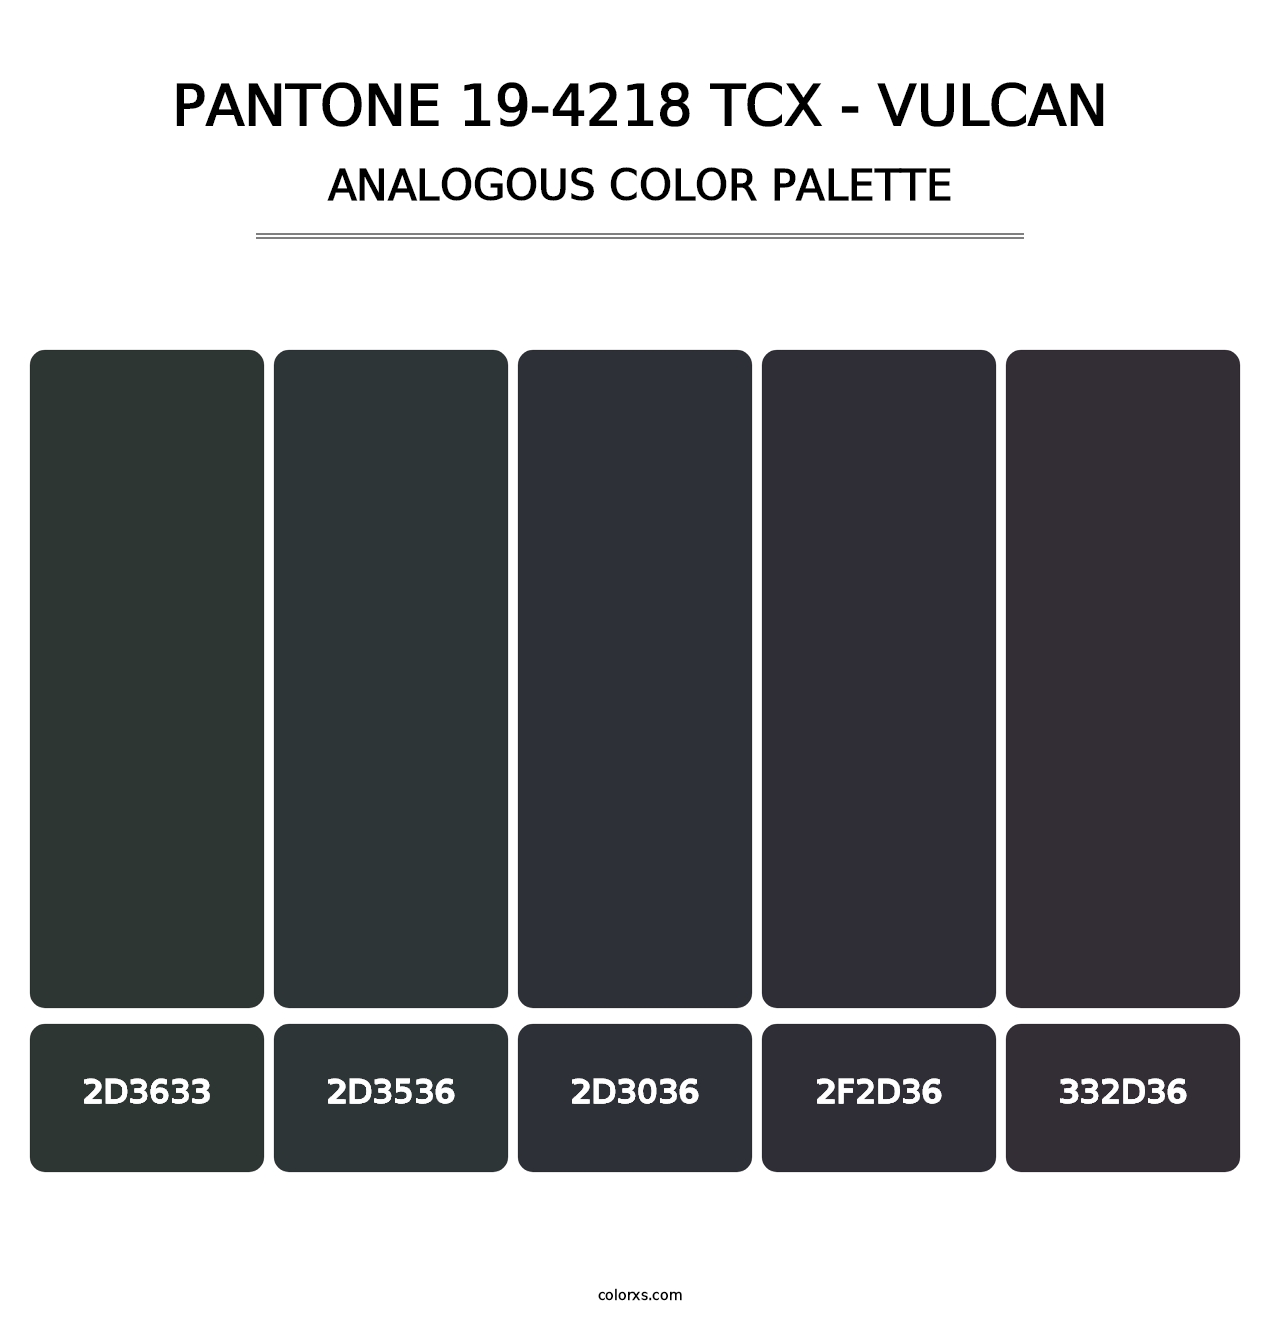 PANTONE 19-4218 TCX - Vulcan - Analogous Color Palette